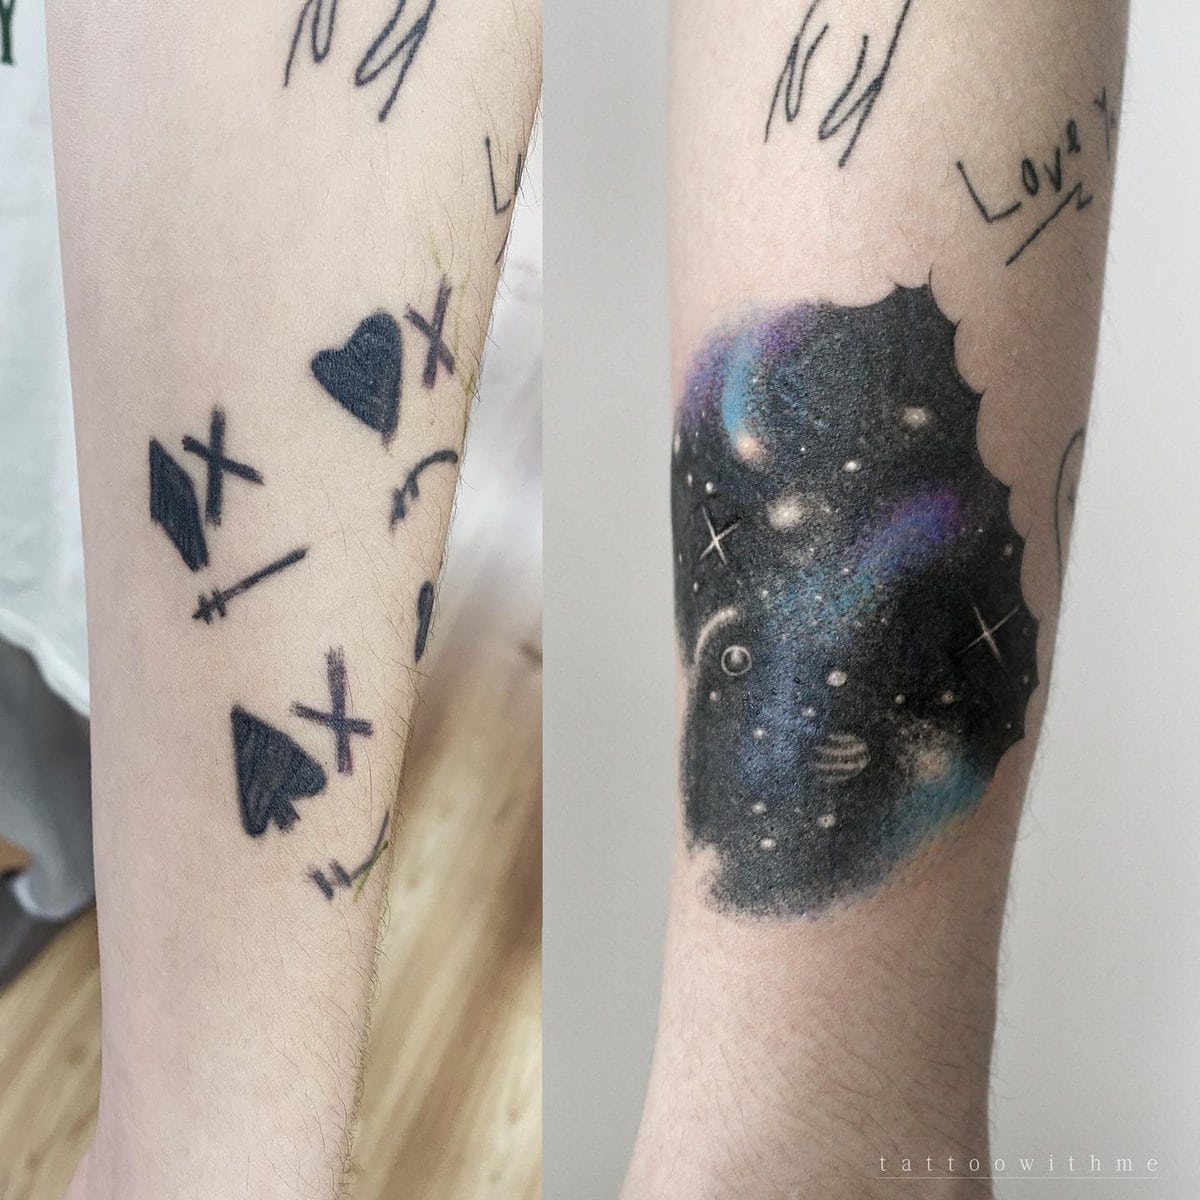 Fixed Tattoos